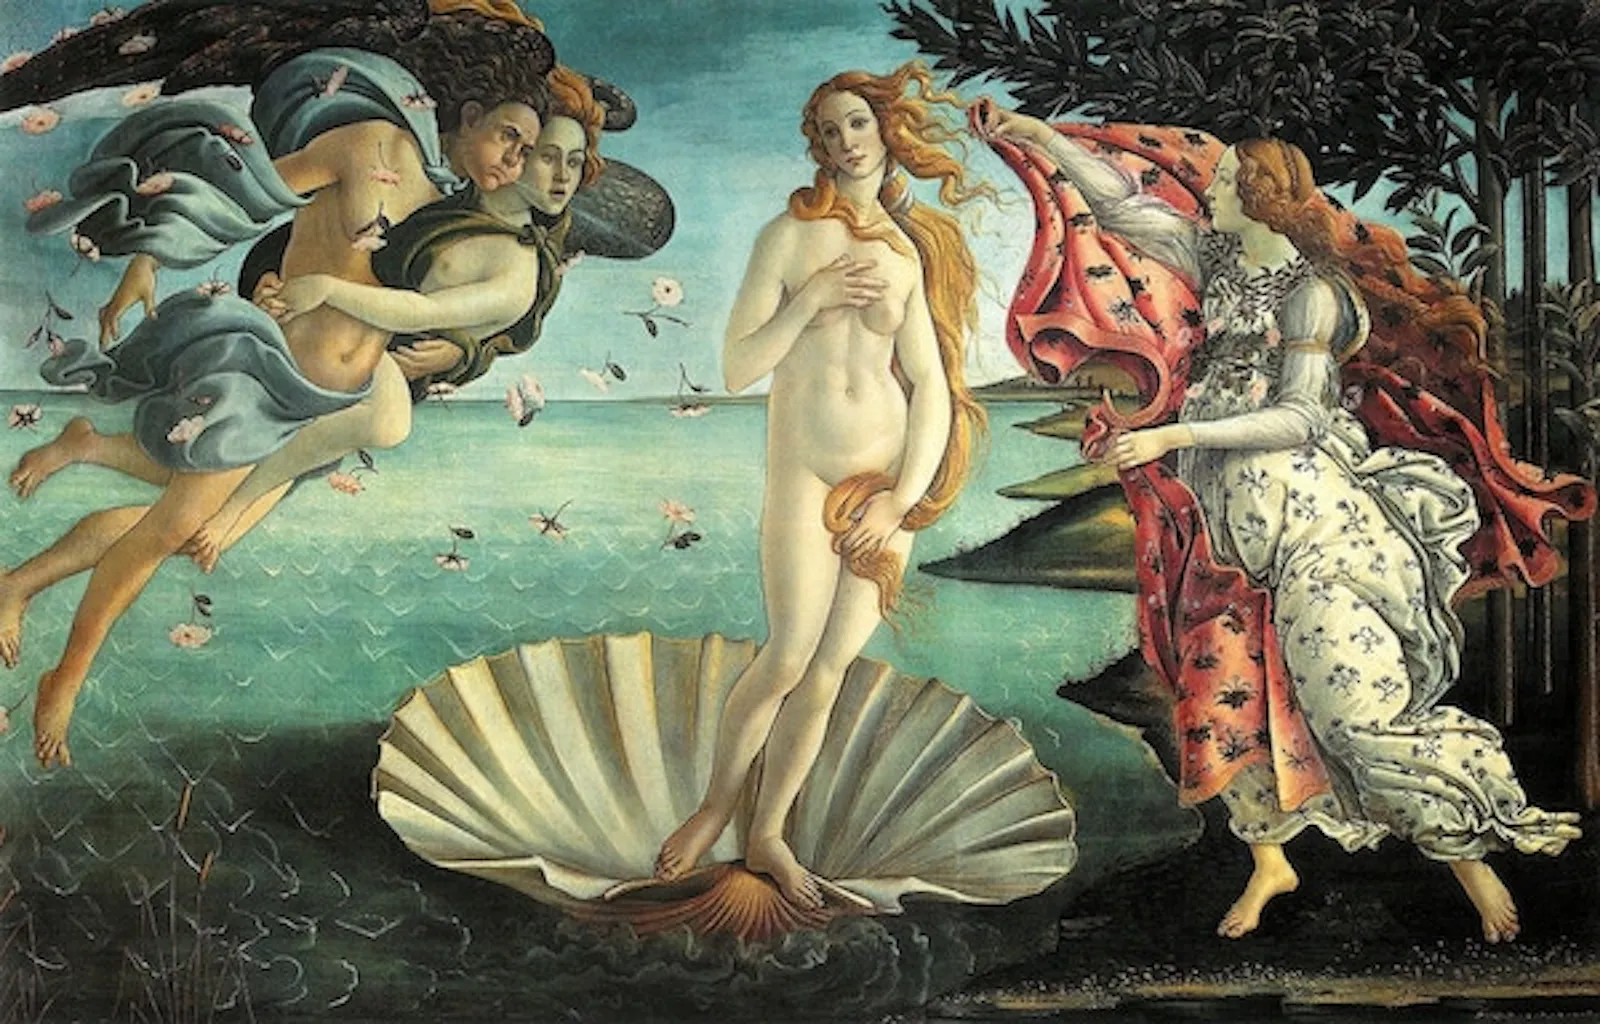 En el centro Venus esta desnuda sobre una concha, a la derecha una dama es la primavera y a la izquierda el viento cefiro sopla junto a su pareja